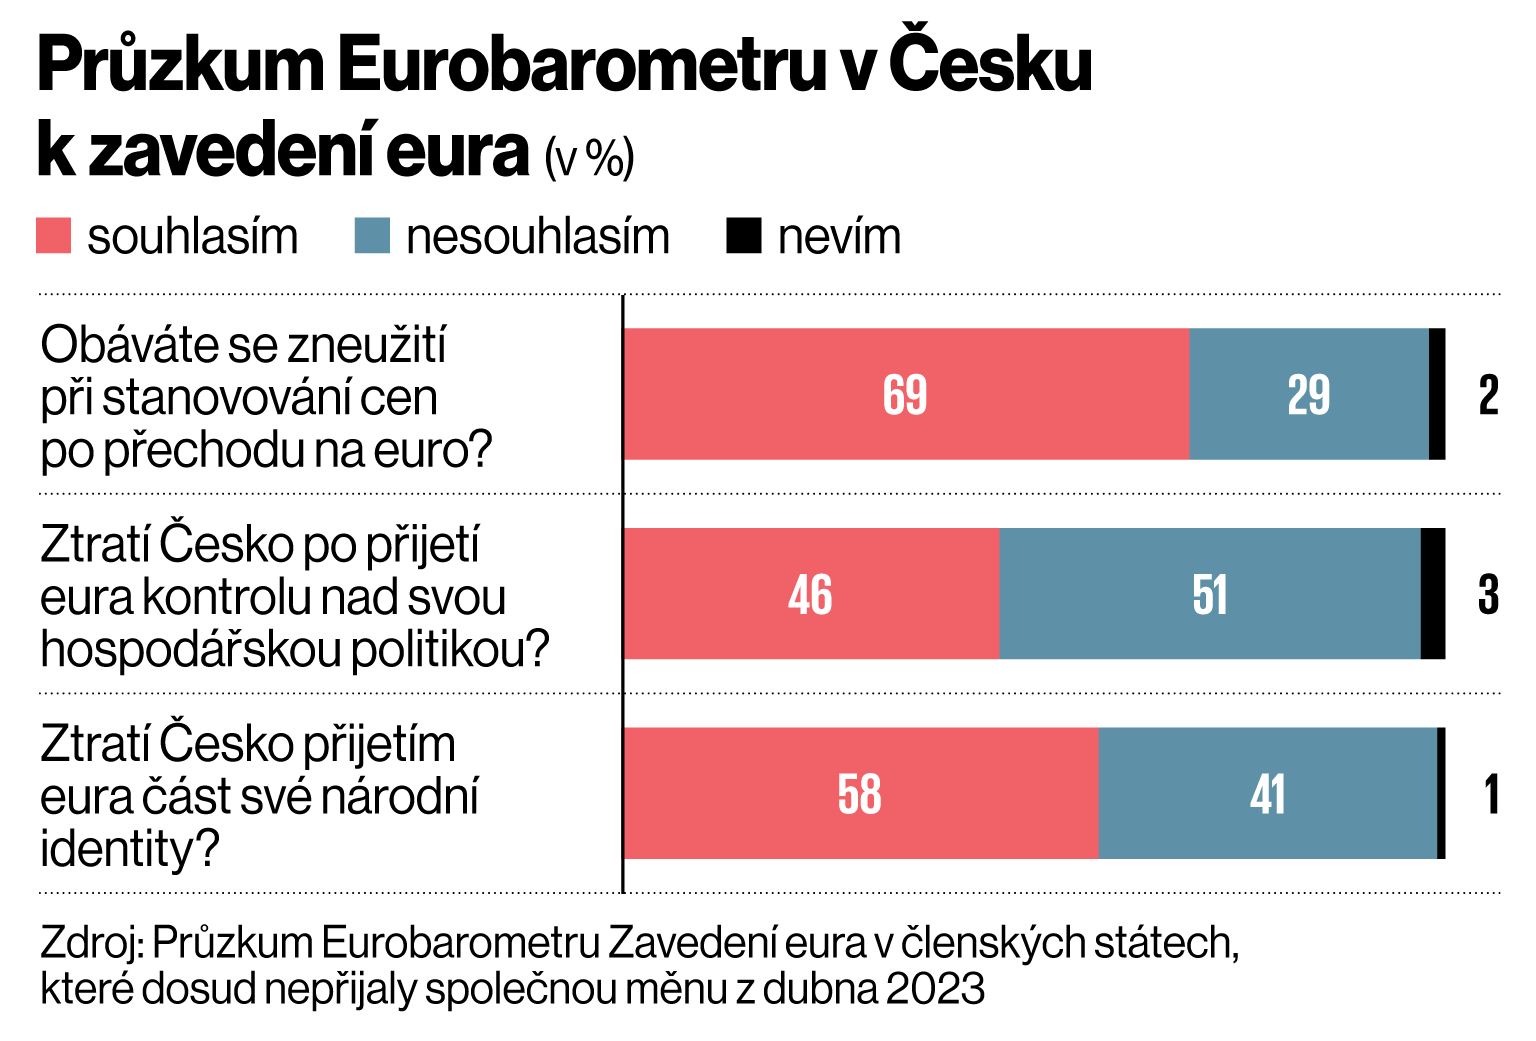 Przkum Eurobarometru v esku k zaveden eura (v %)